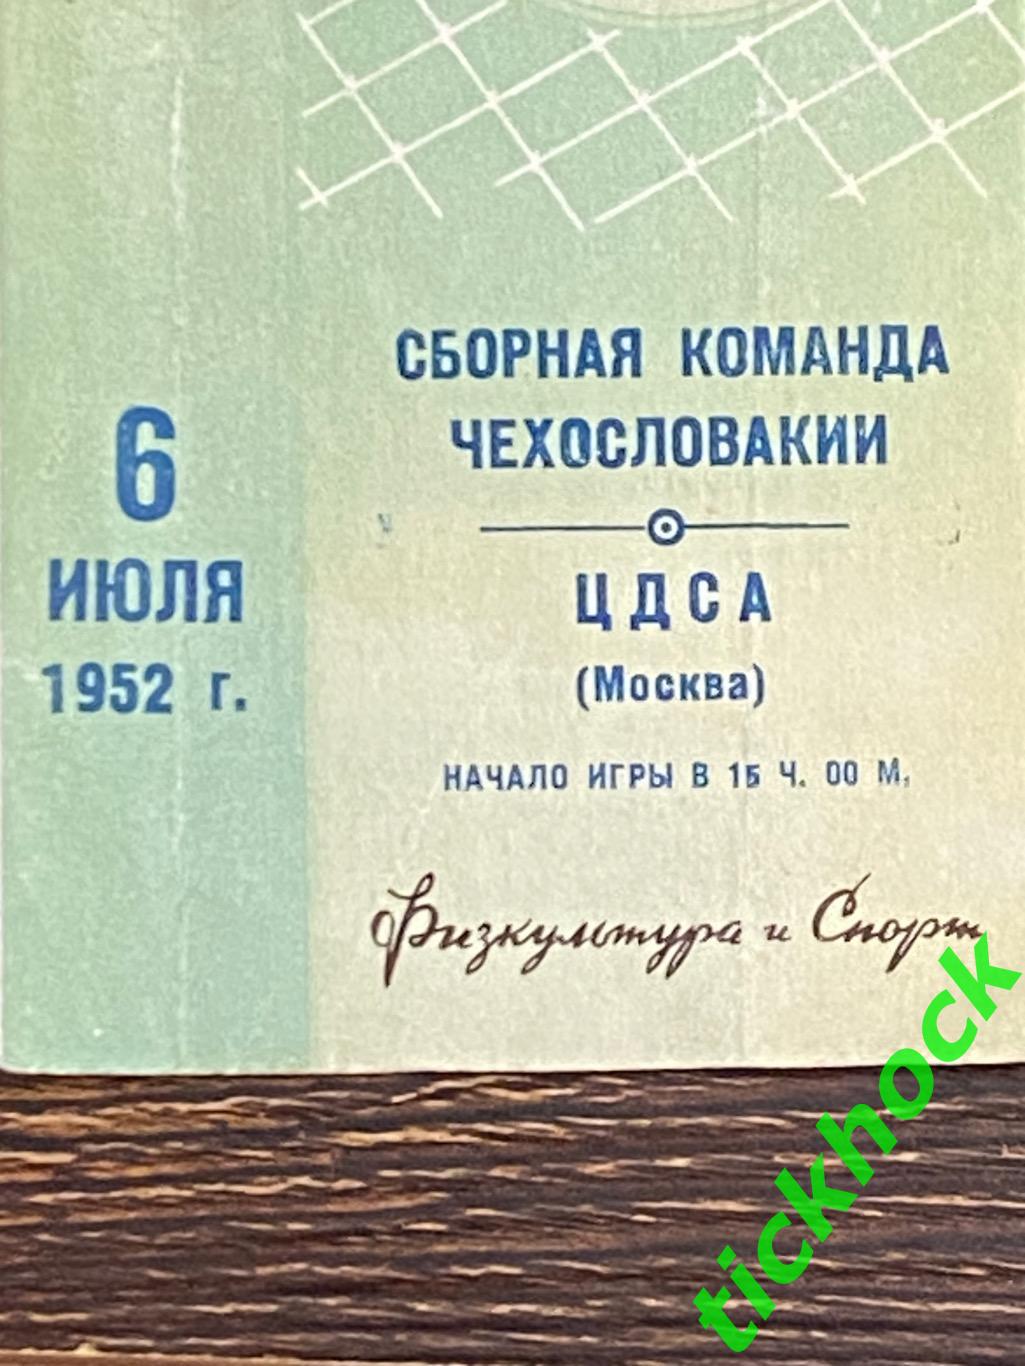 ЦДСА / ЦСКА Москва - Чехословакия сборная - 06.07.1952 МТМ - SY 2